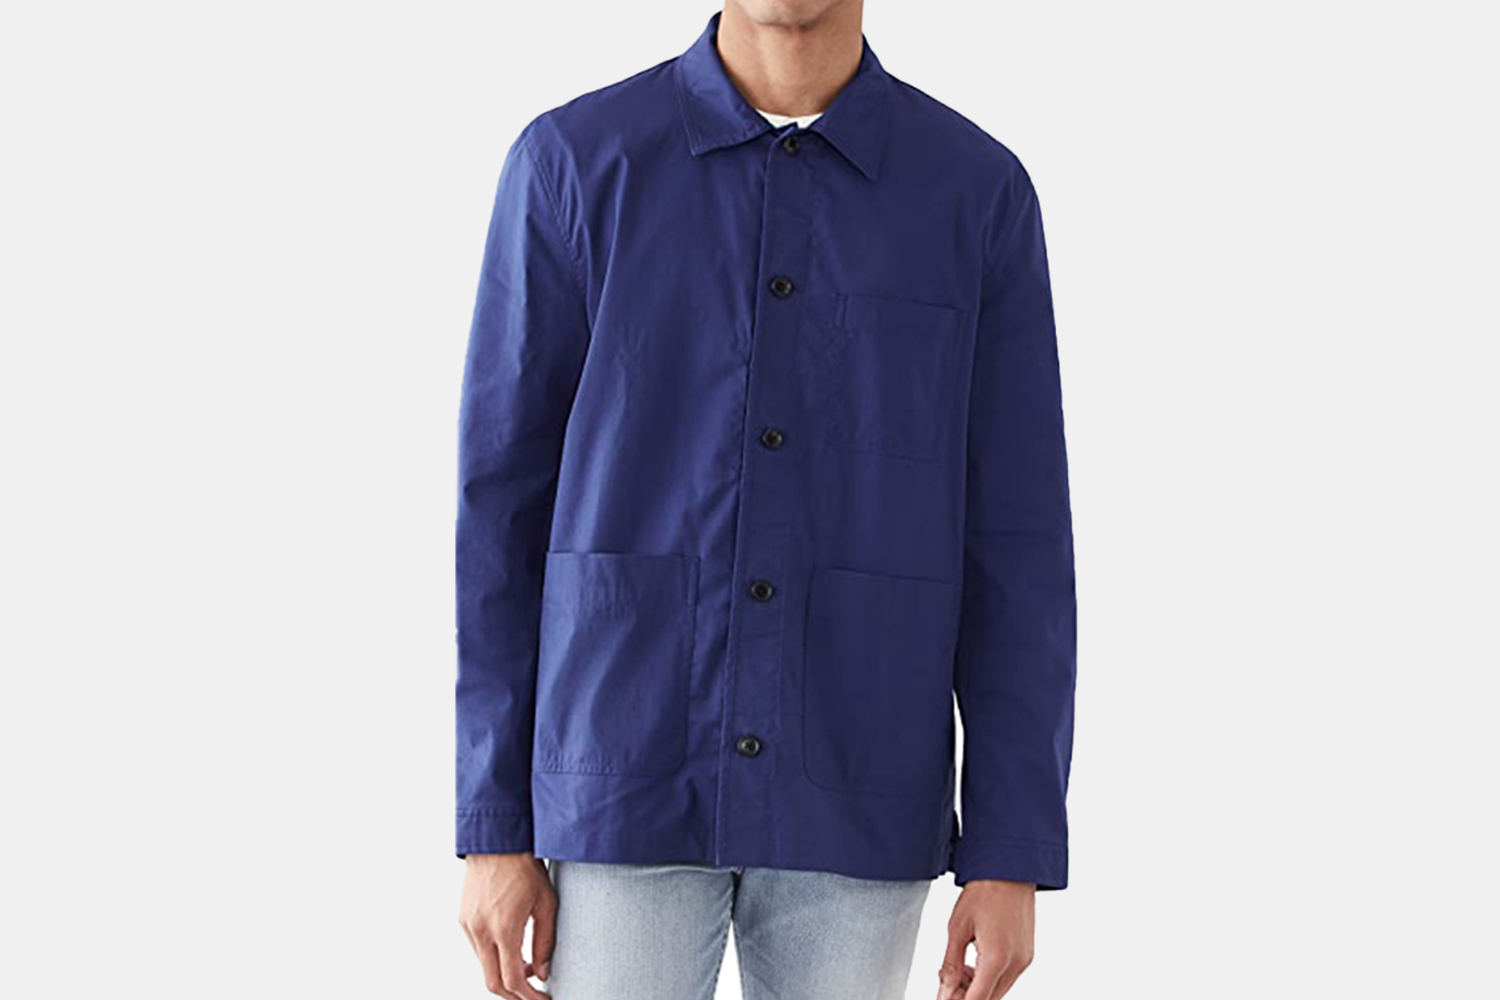 A blue workwear jacket.